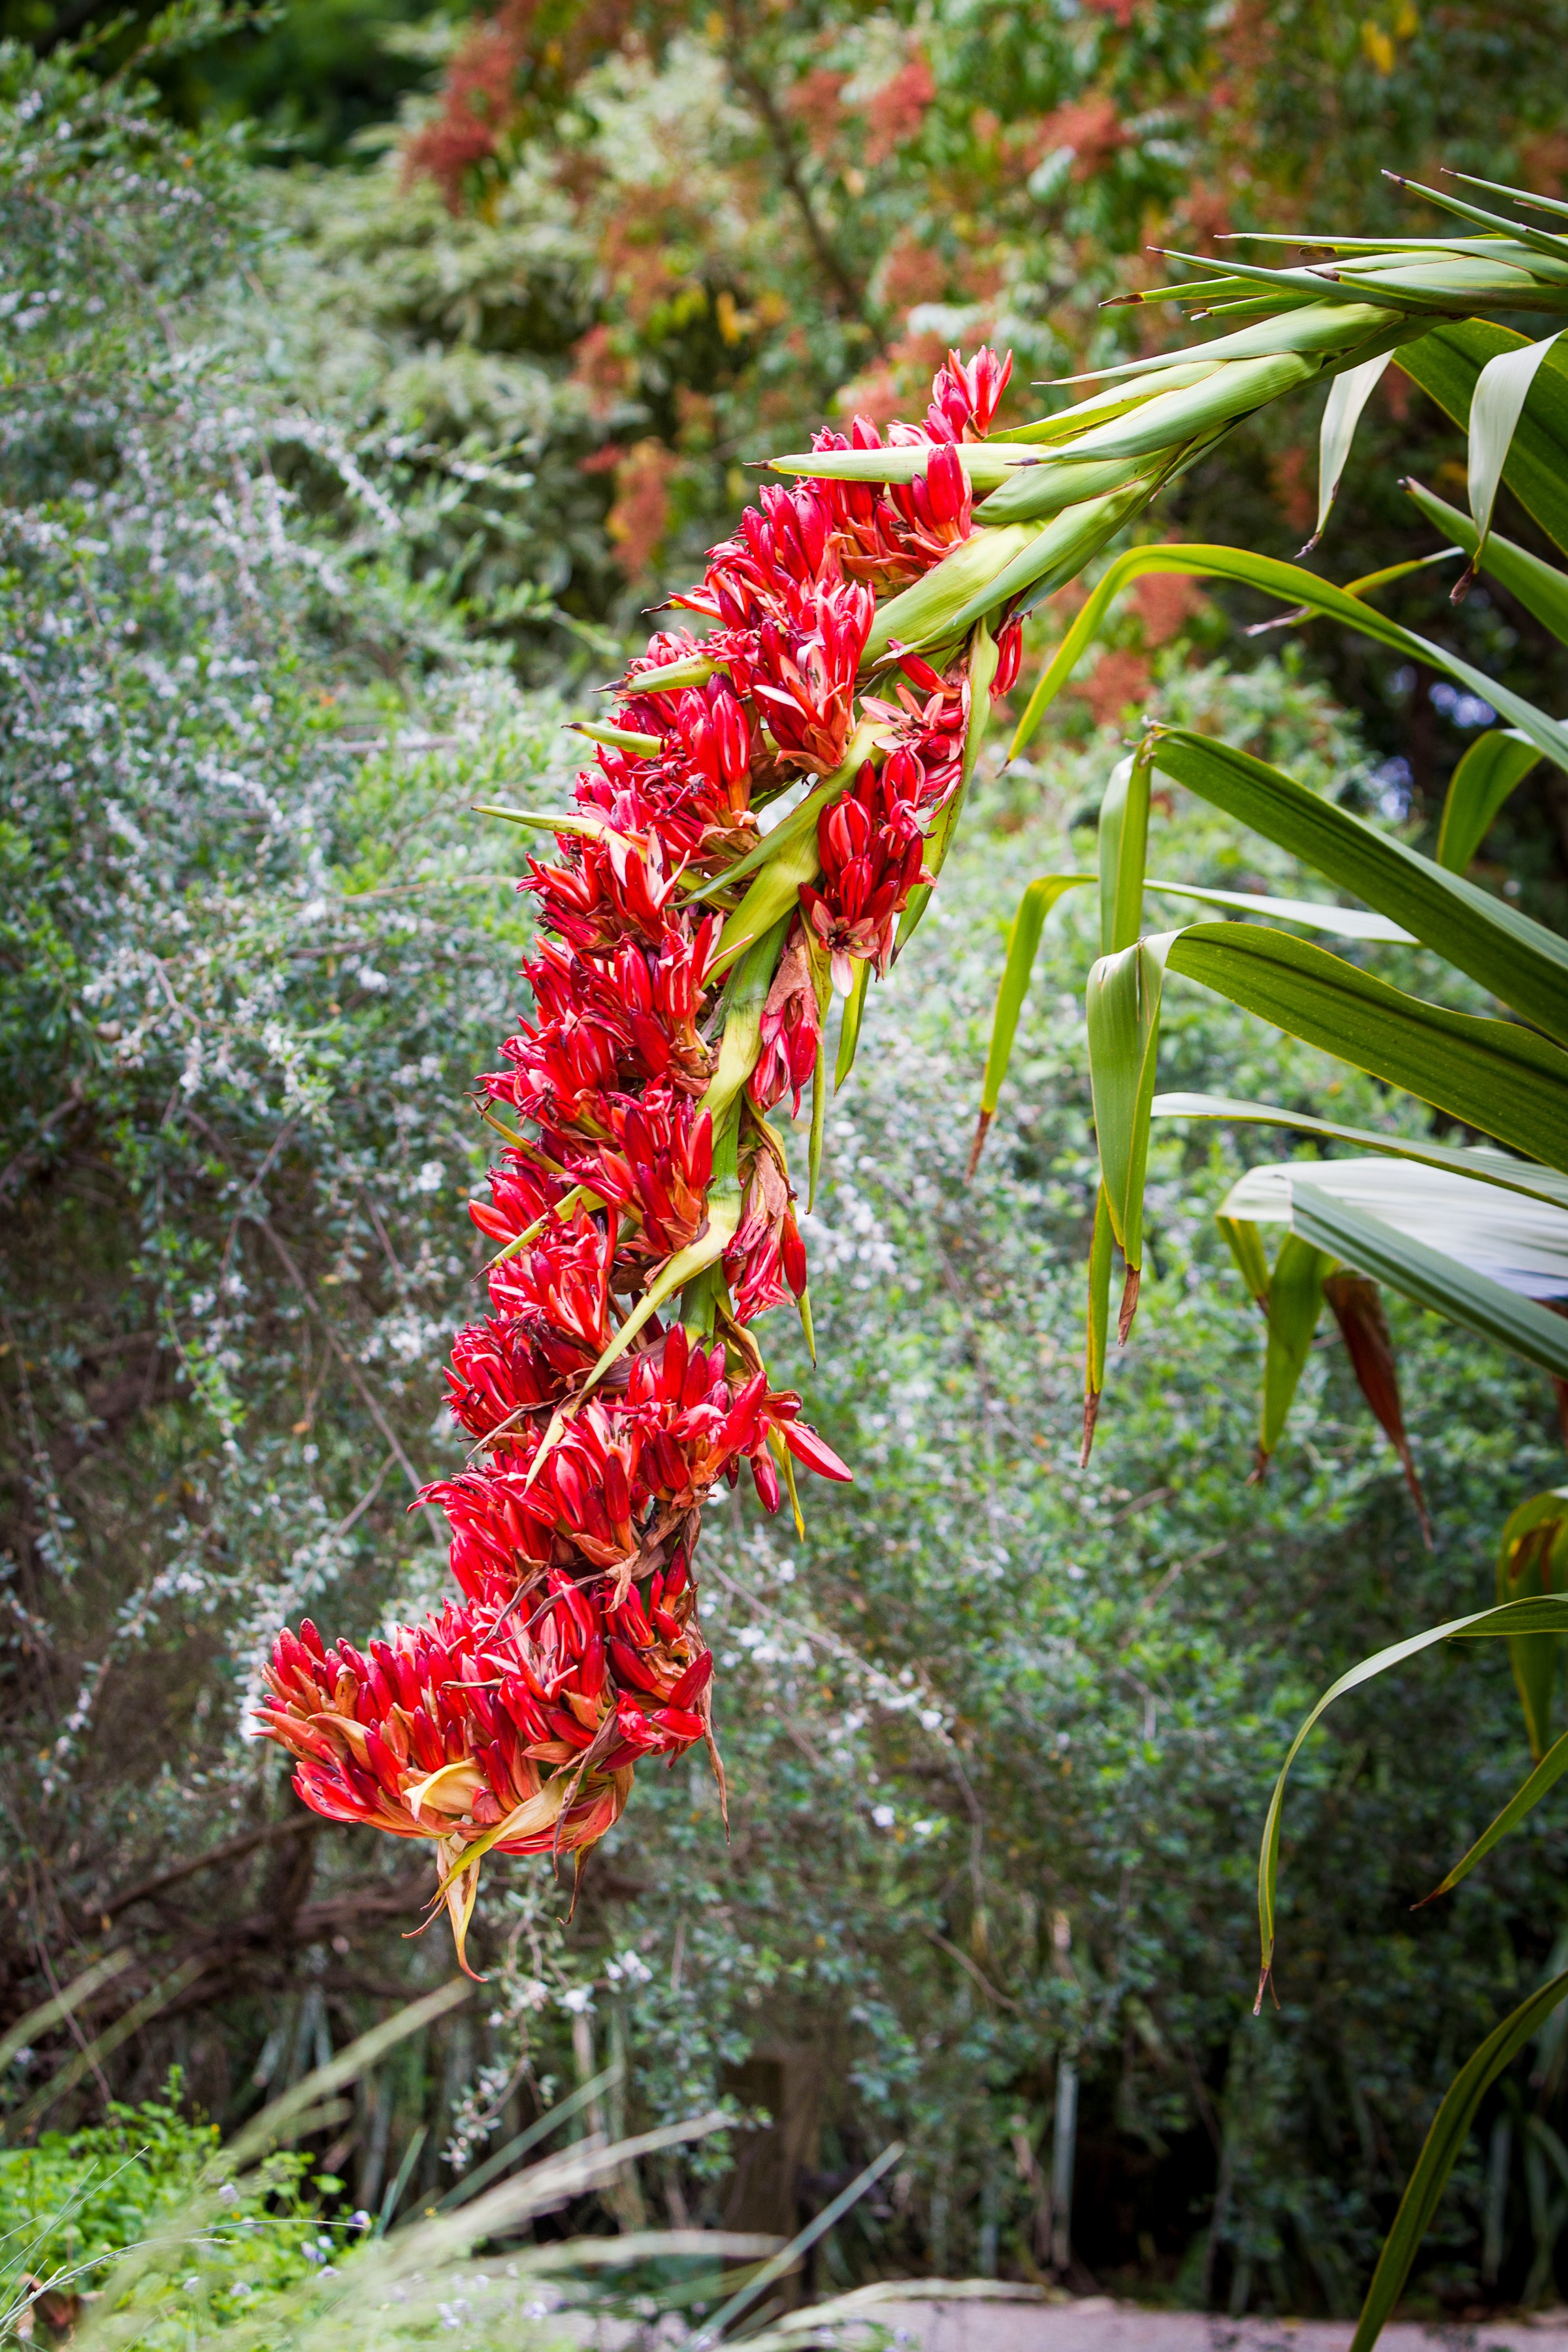 Red Ginger Flower with shrubs surronding